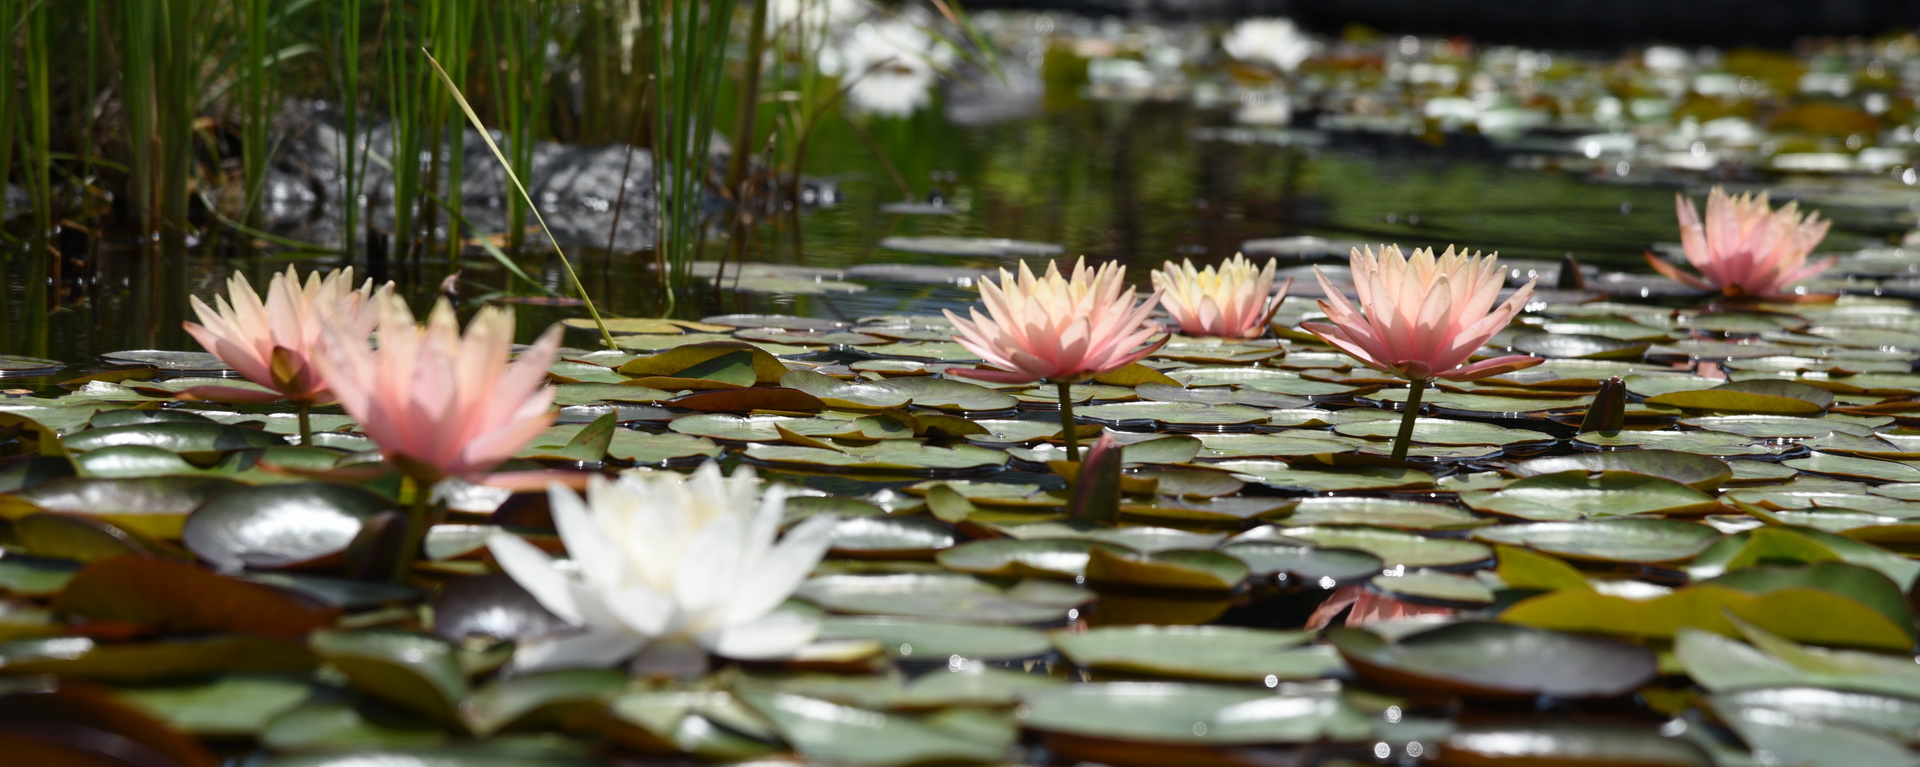 Lily pond 